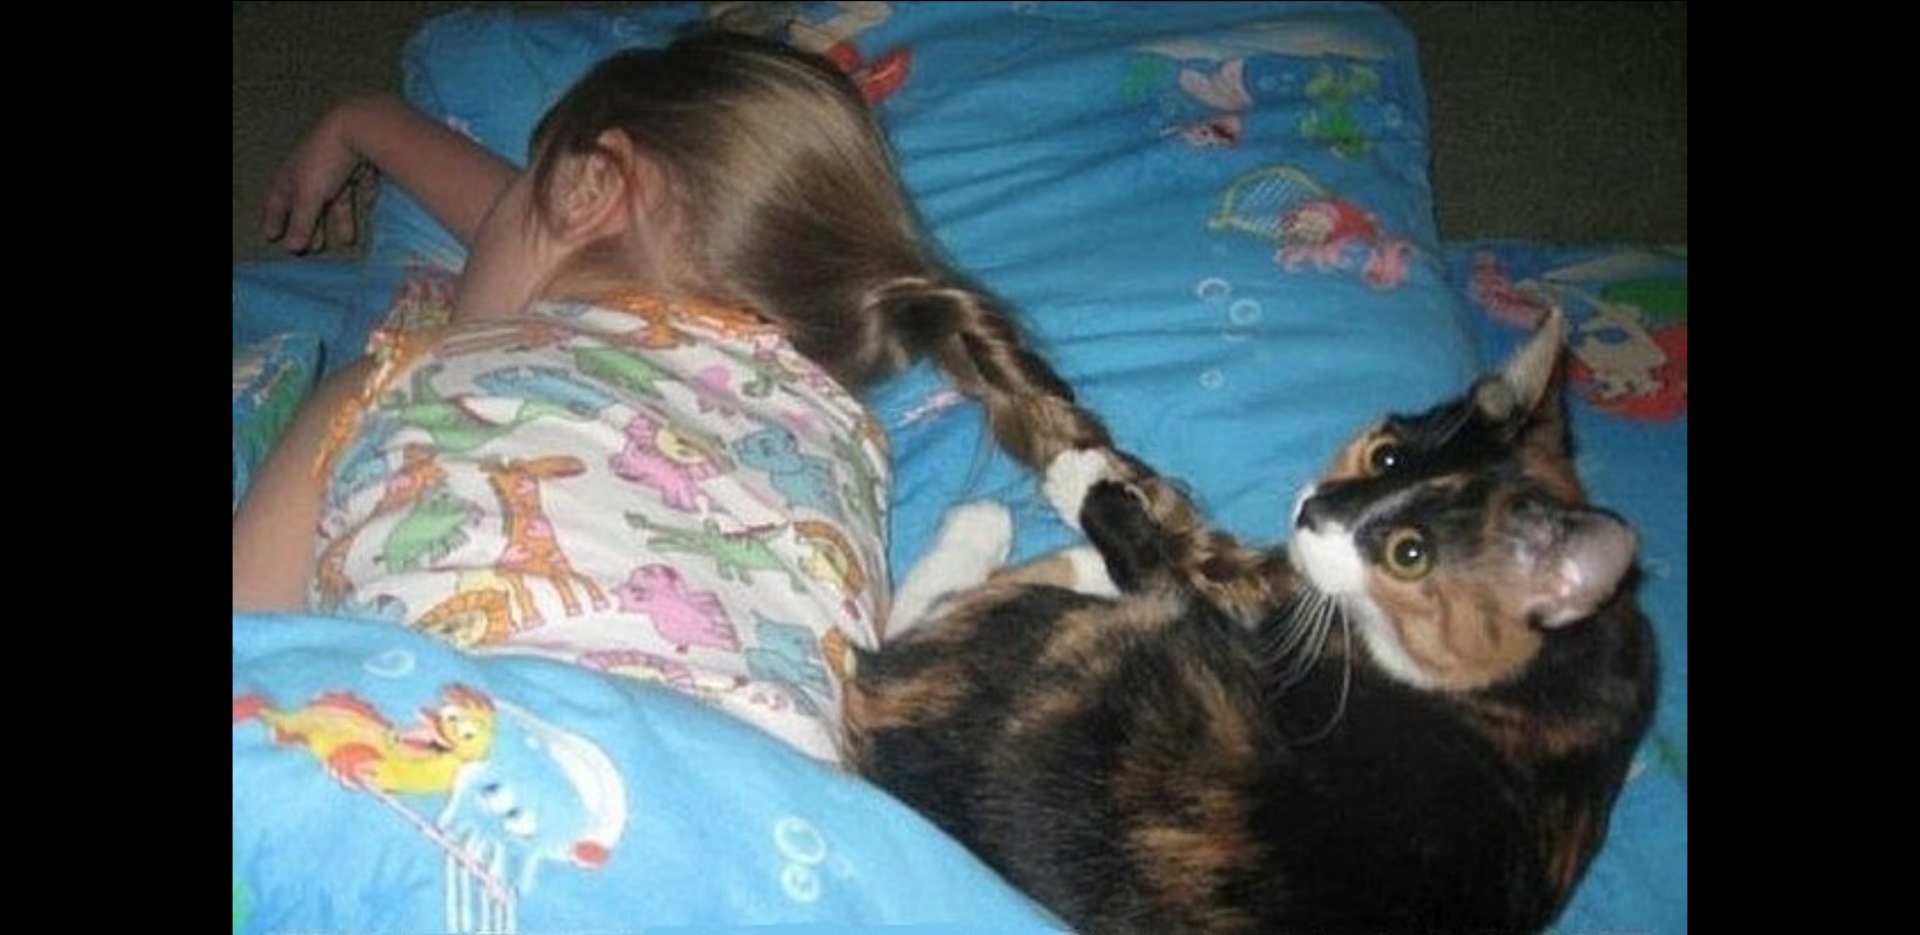 Дочка тоже есть. Кот пора вставать. Котоматрица рано утром. Смешные картинки про кошек с надписями. Проснулись картинки смешные.